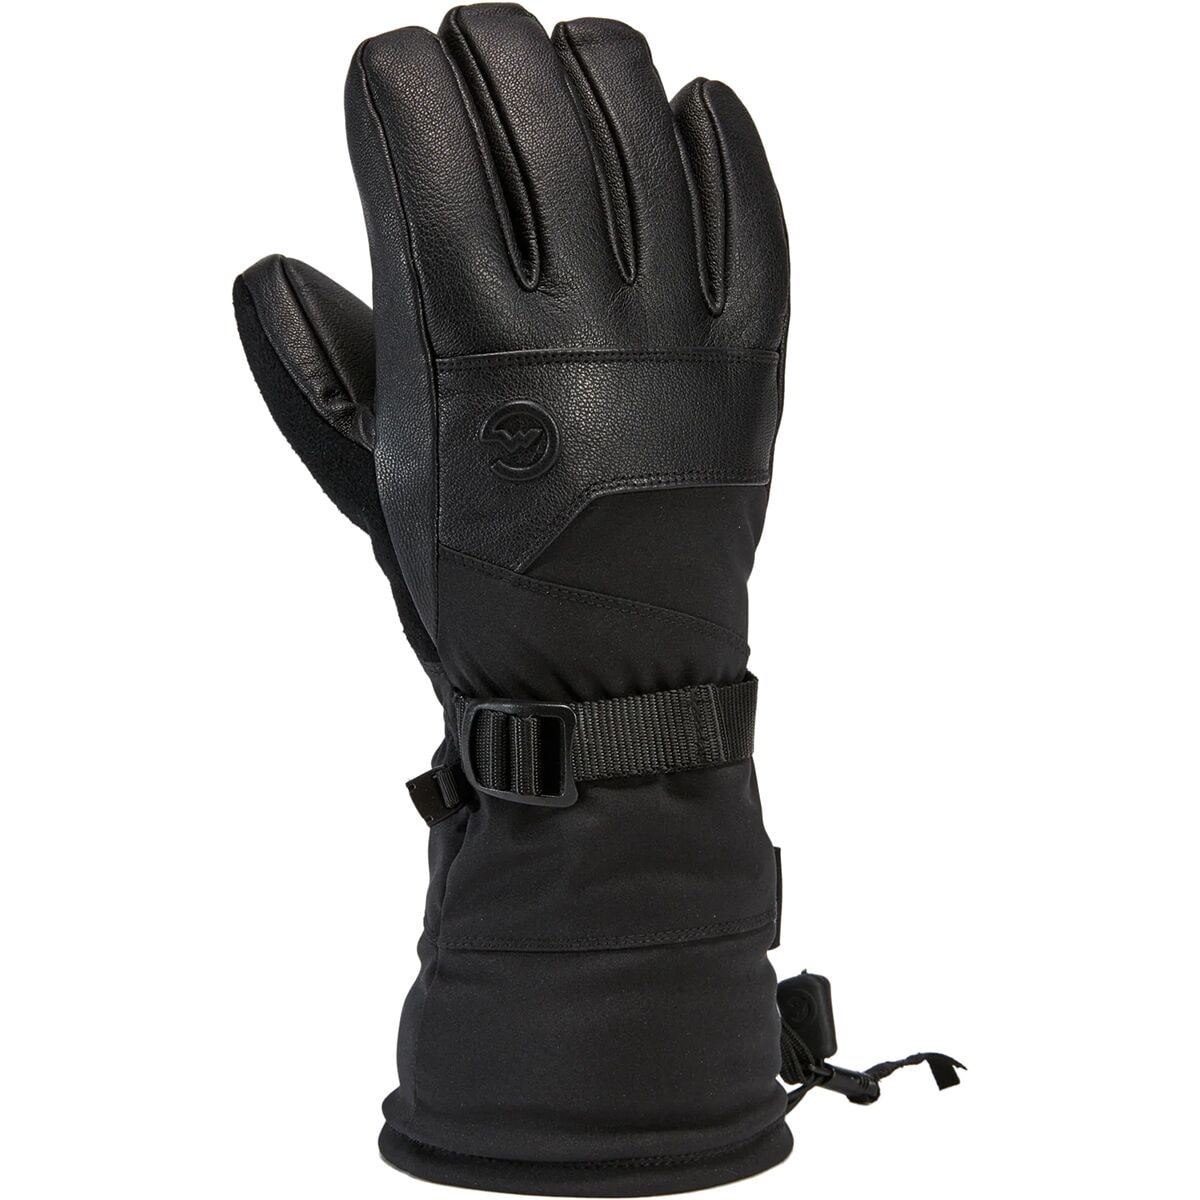 Gordini Polar Gloves - Men's